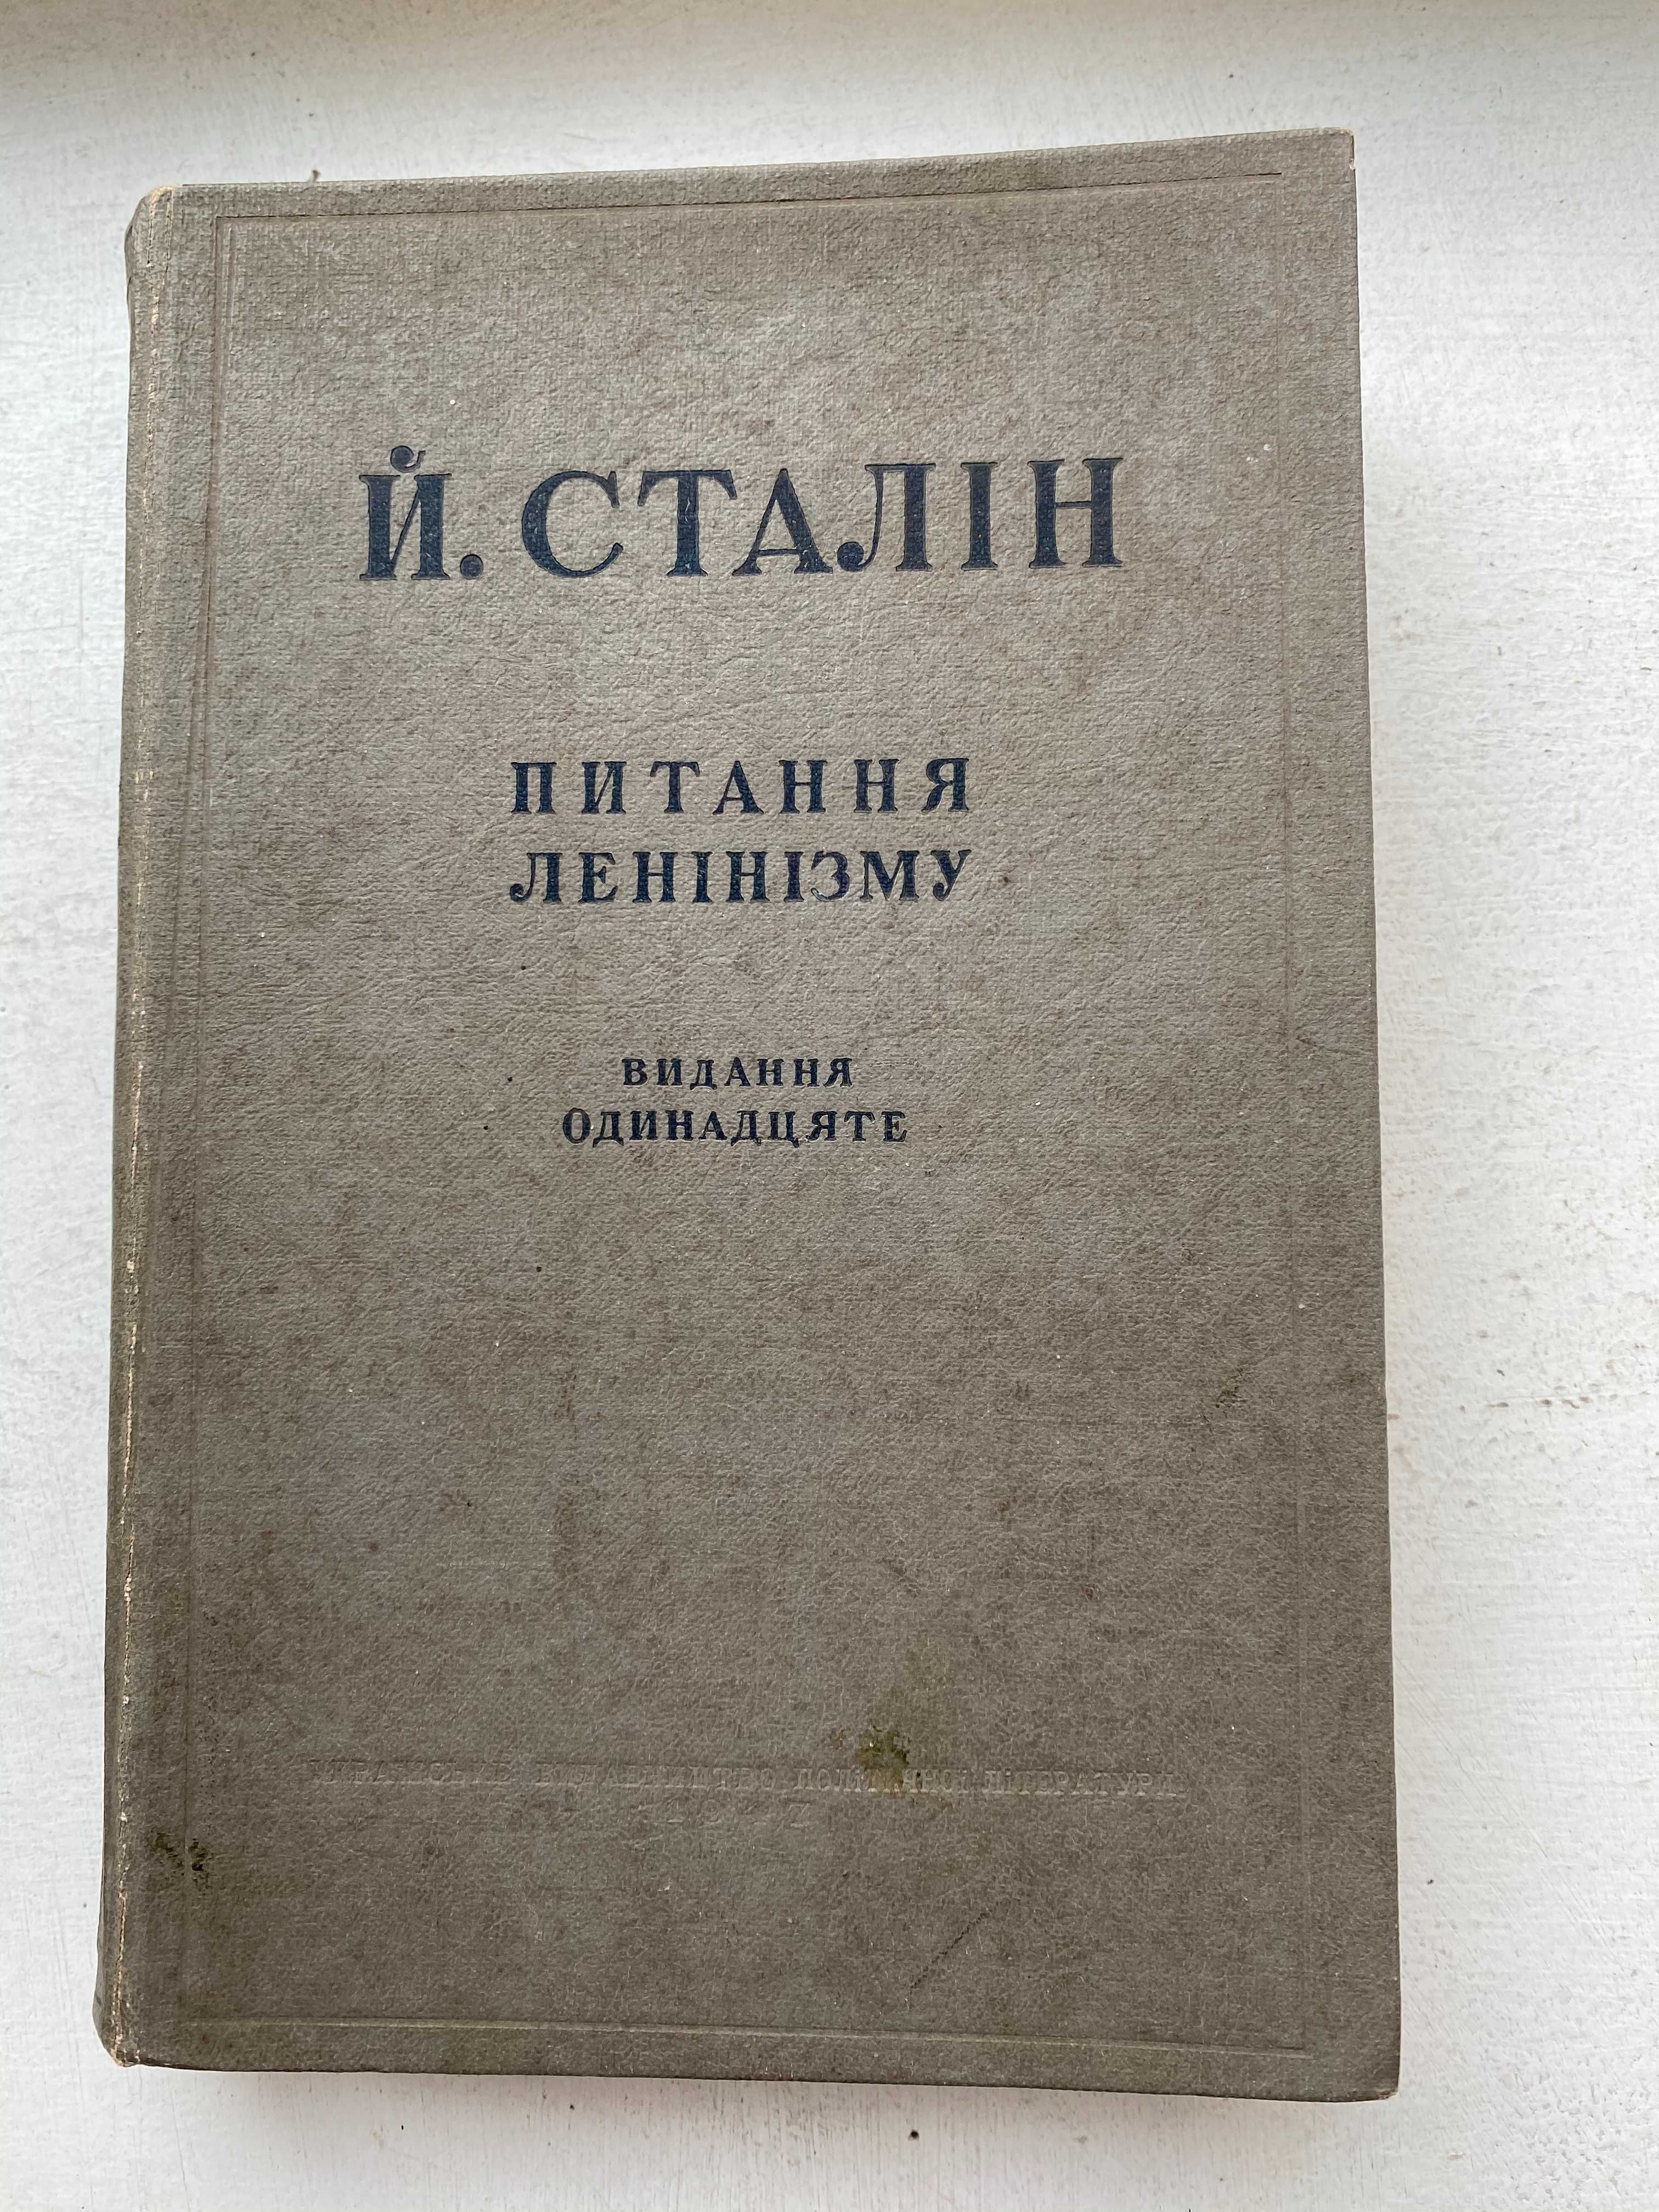 Й. Сталін (И. Сталин) "Питання ленінізму" 1947 р.